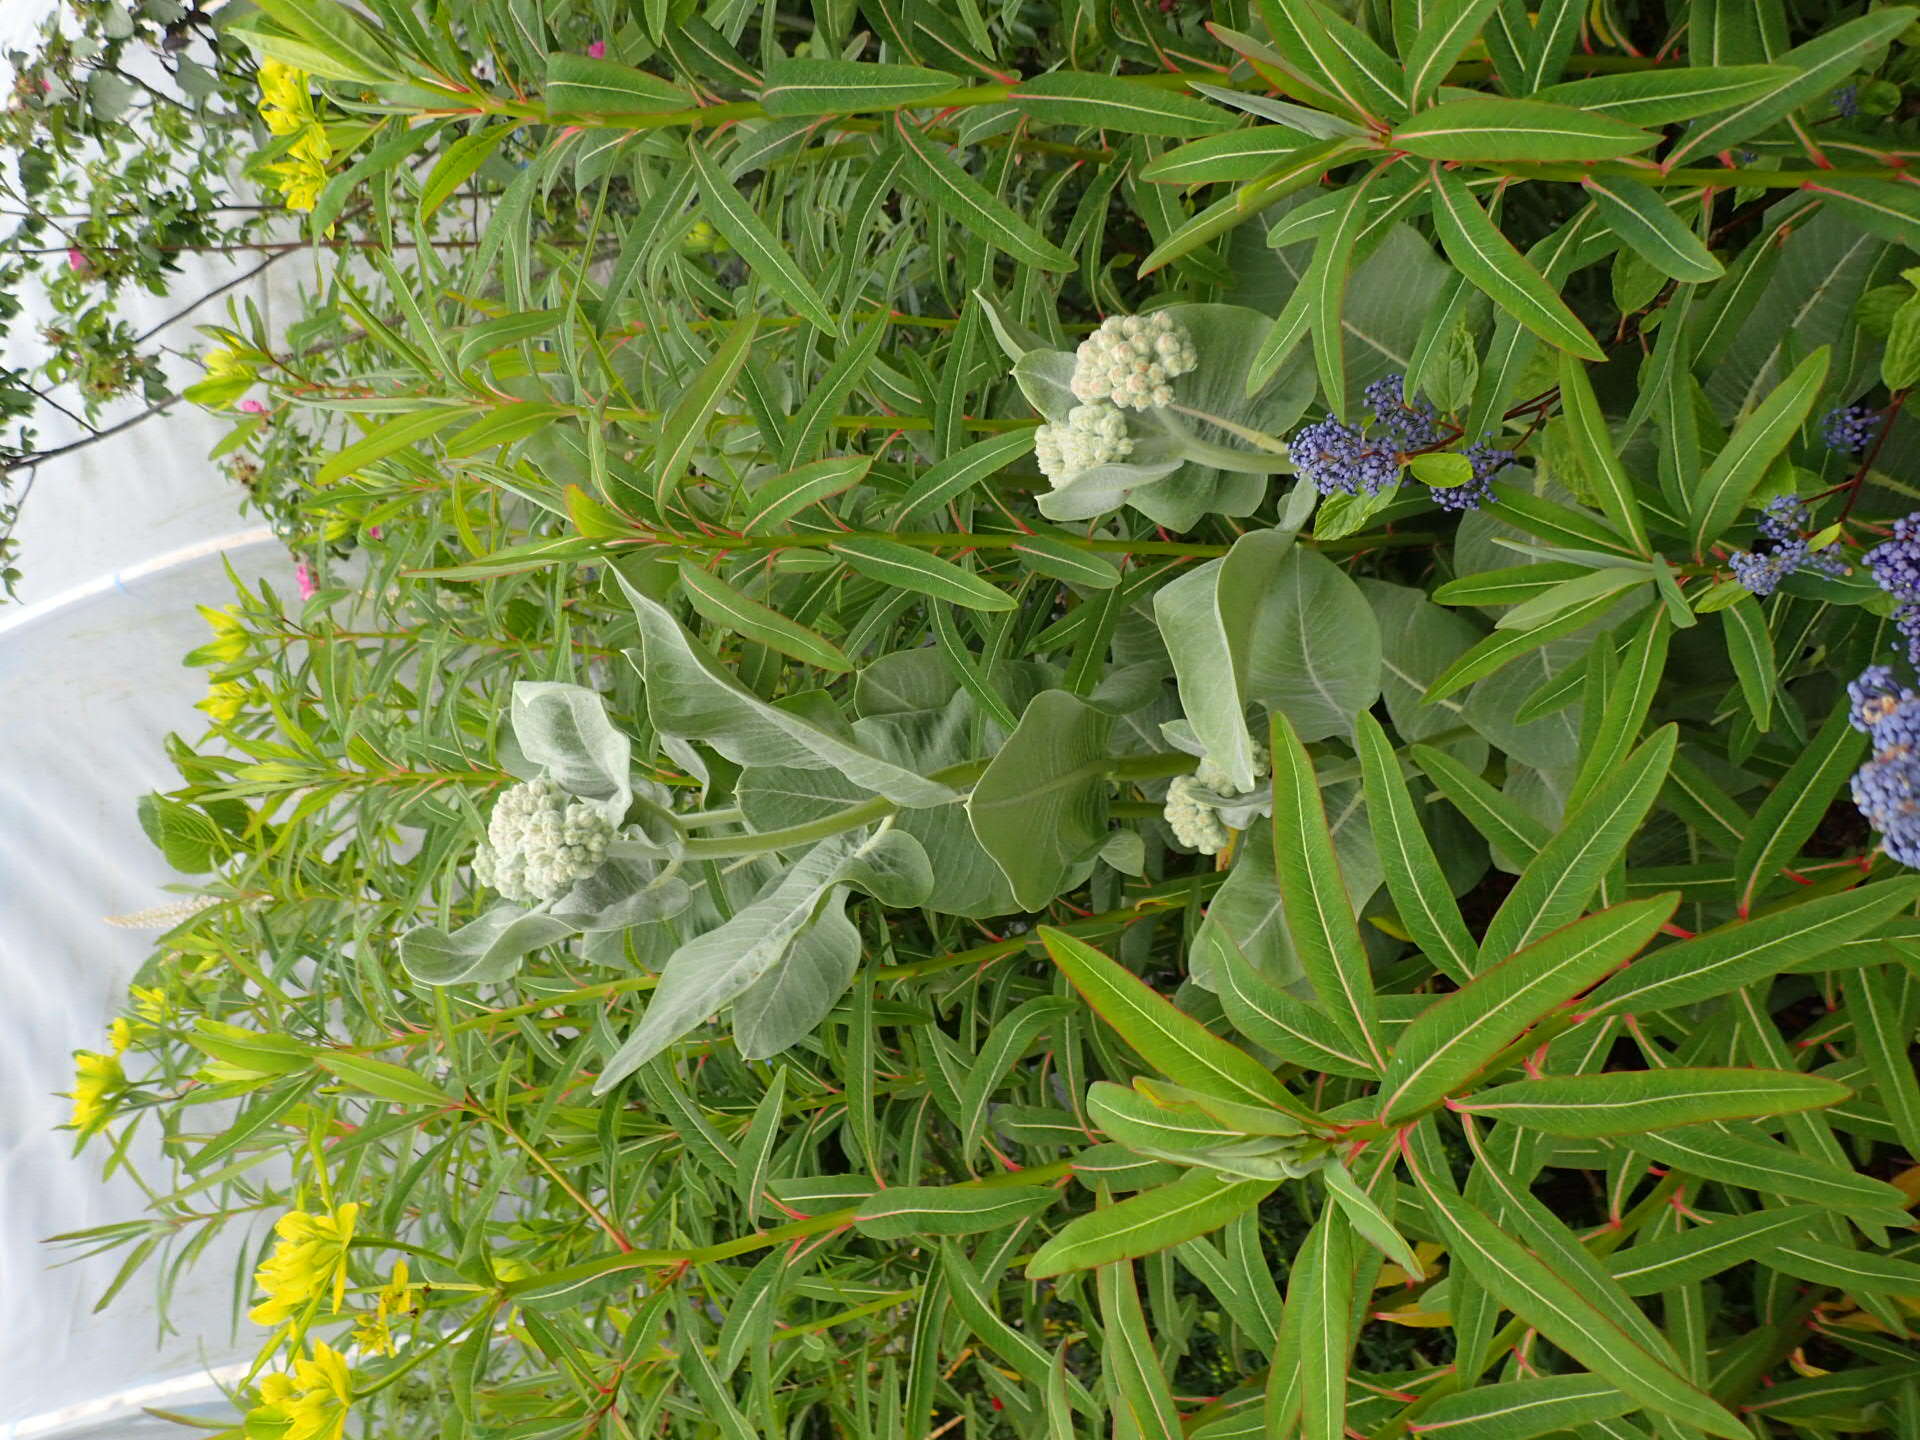 Sivun Euphorbia sikkimensis Boiss. kuva